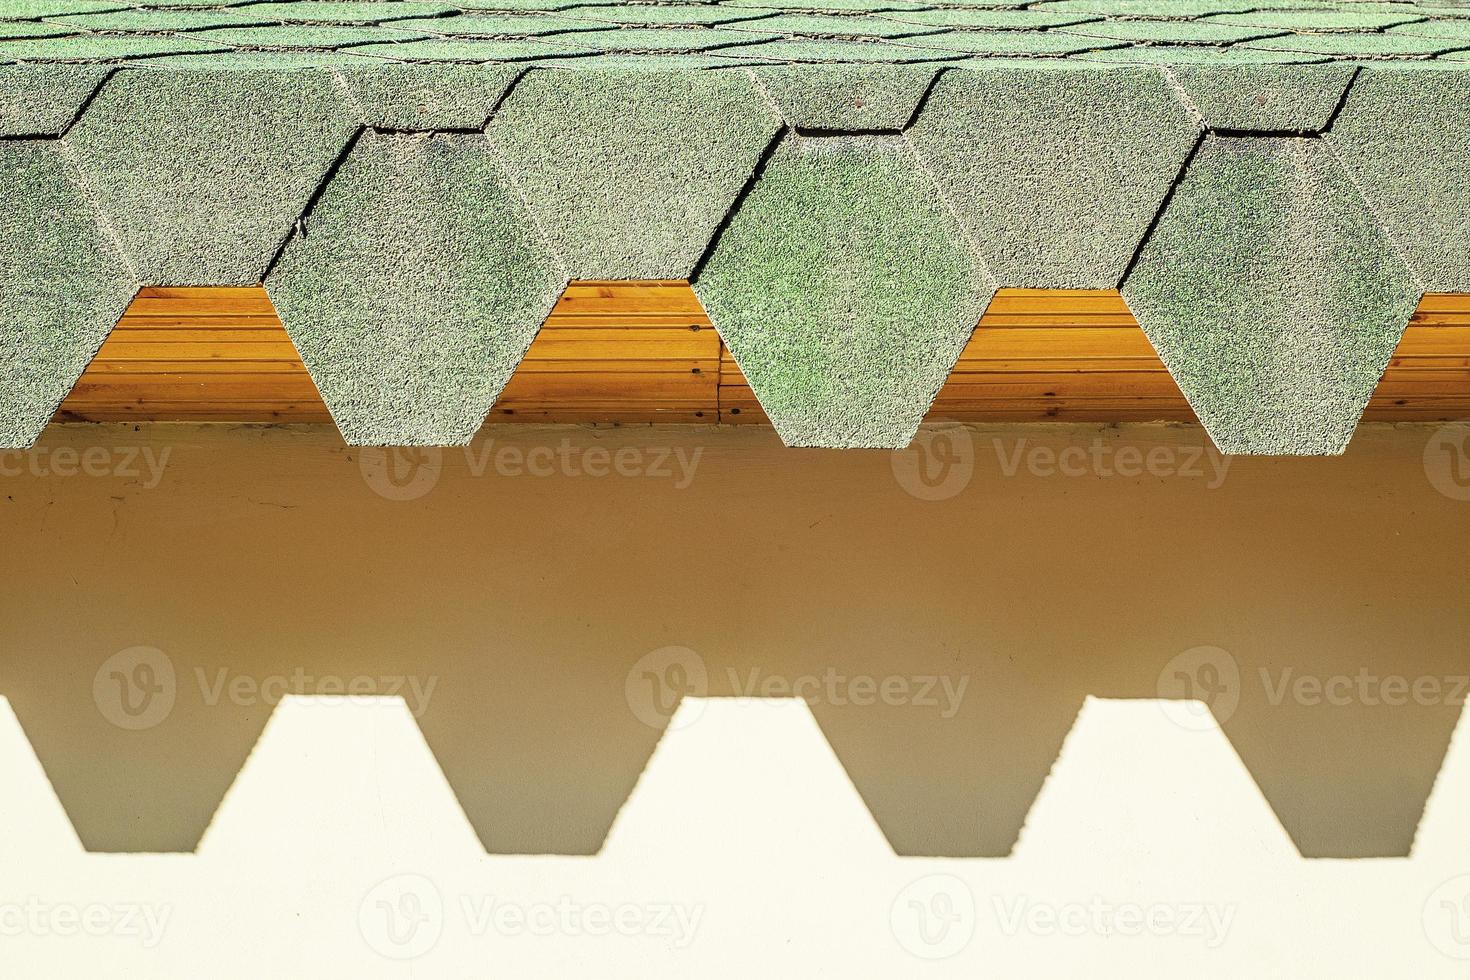 Cubierta ajardinada con tejas hexagonales. techo con bordes dentados que proyectan sombras duras en la pared. foto